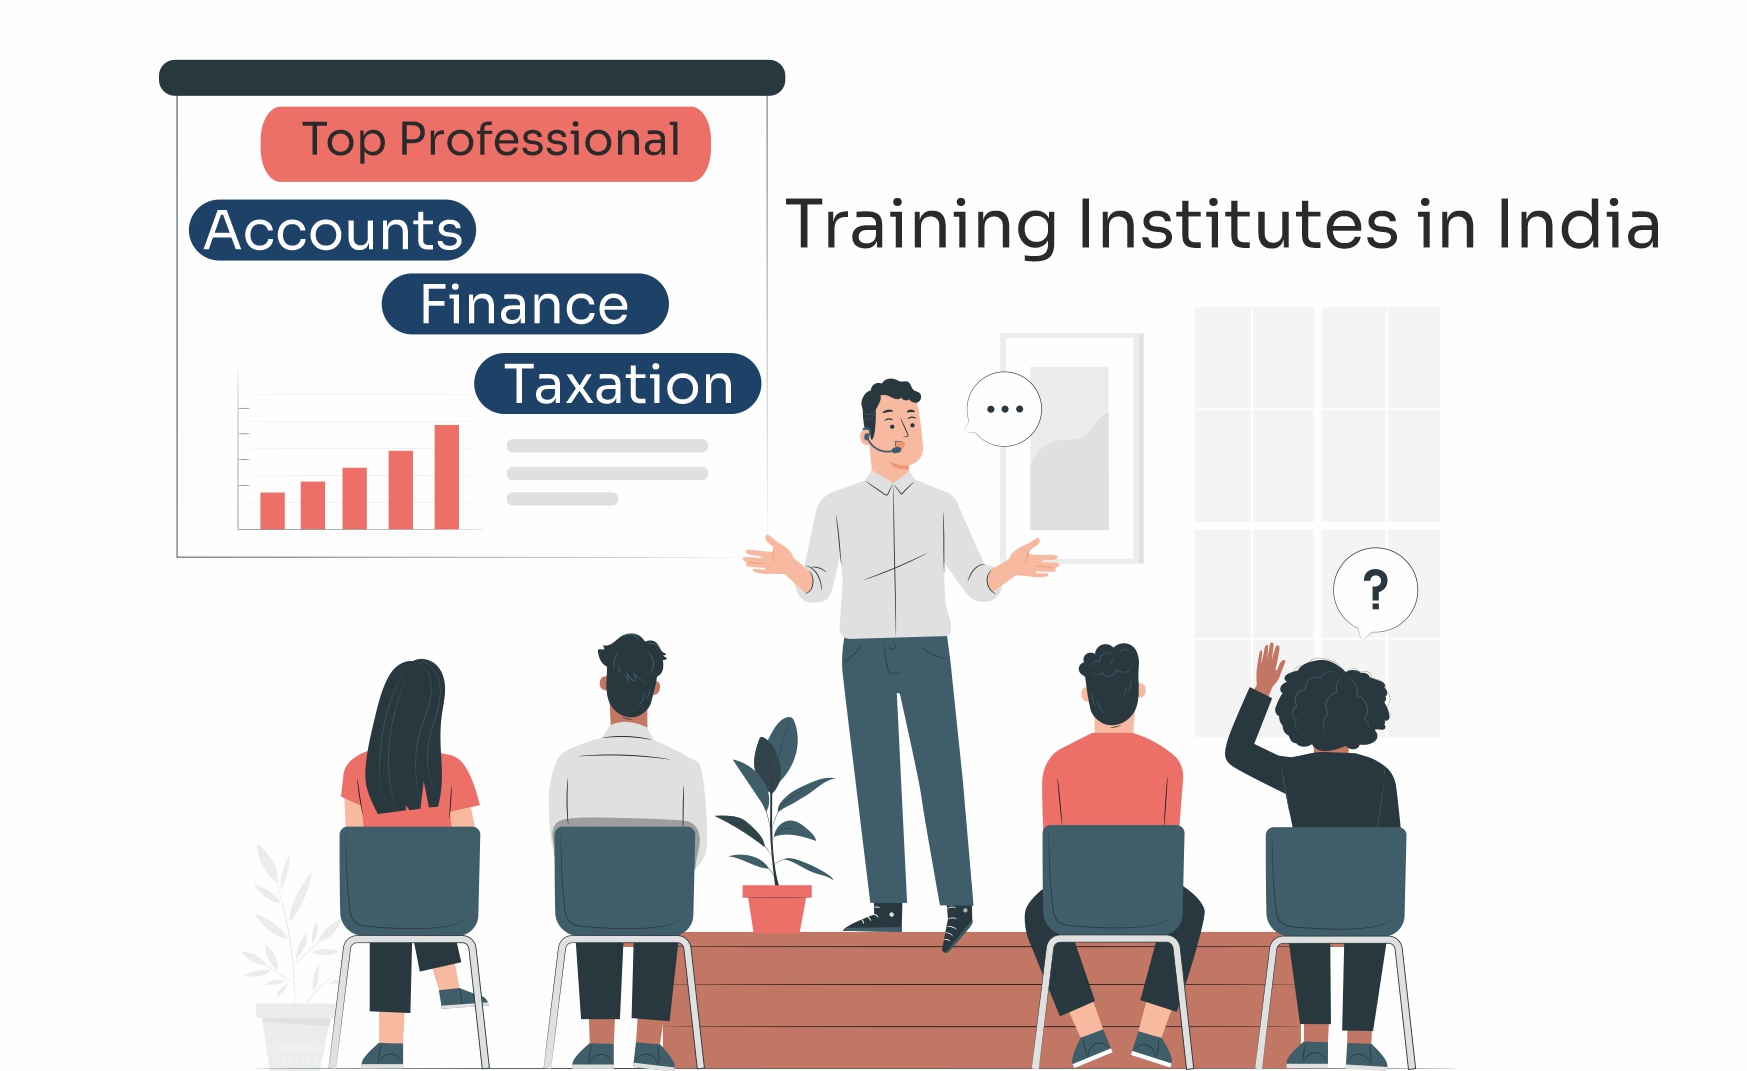 professional training institute